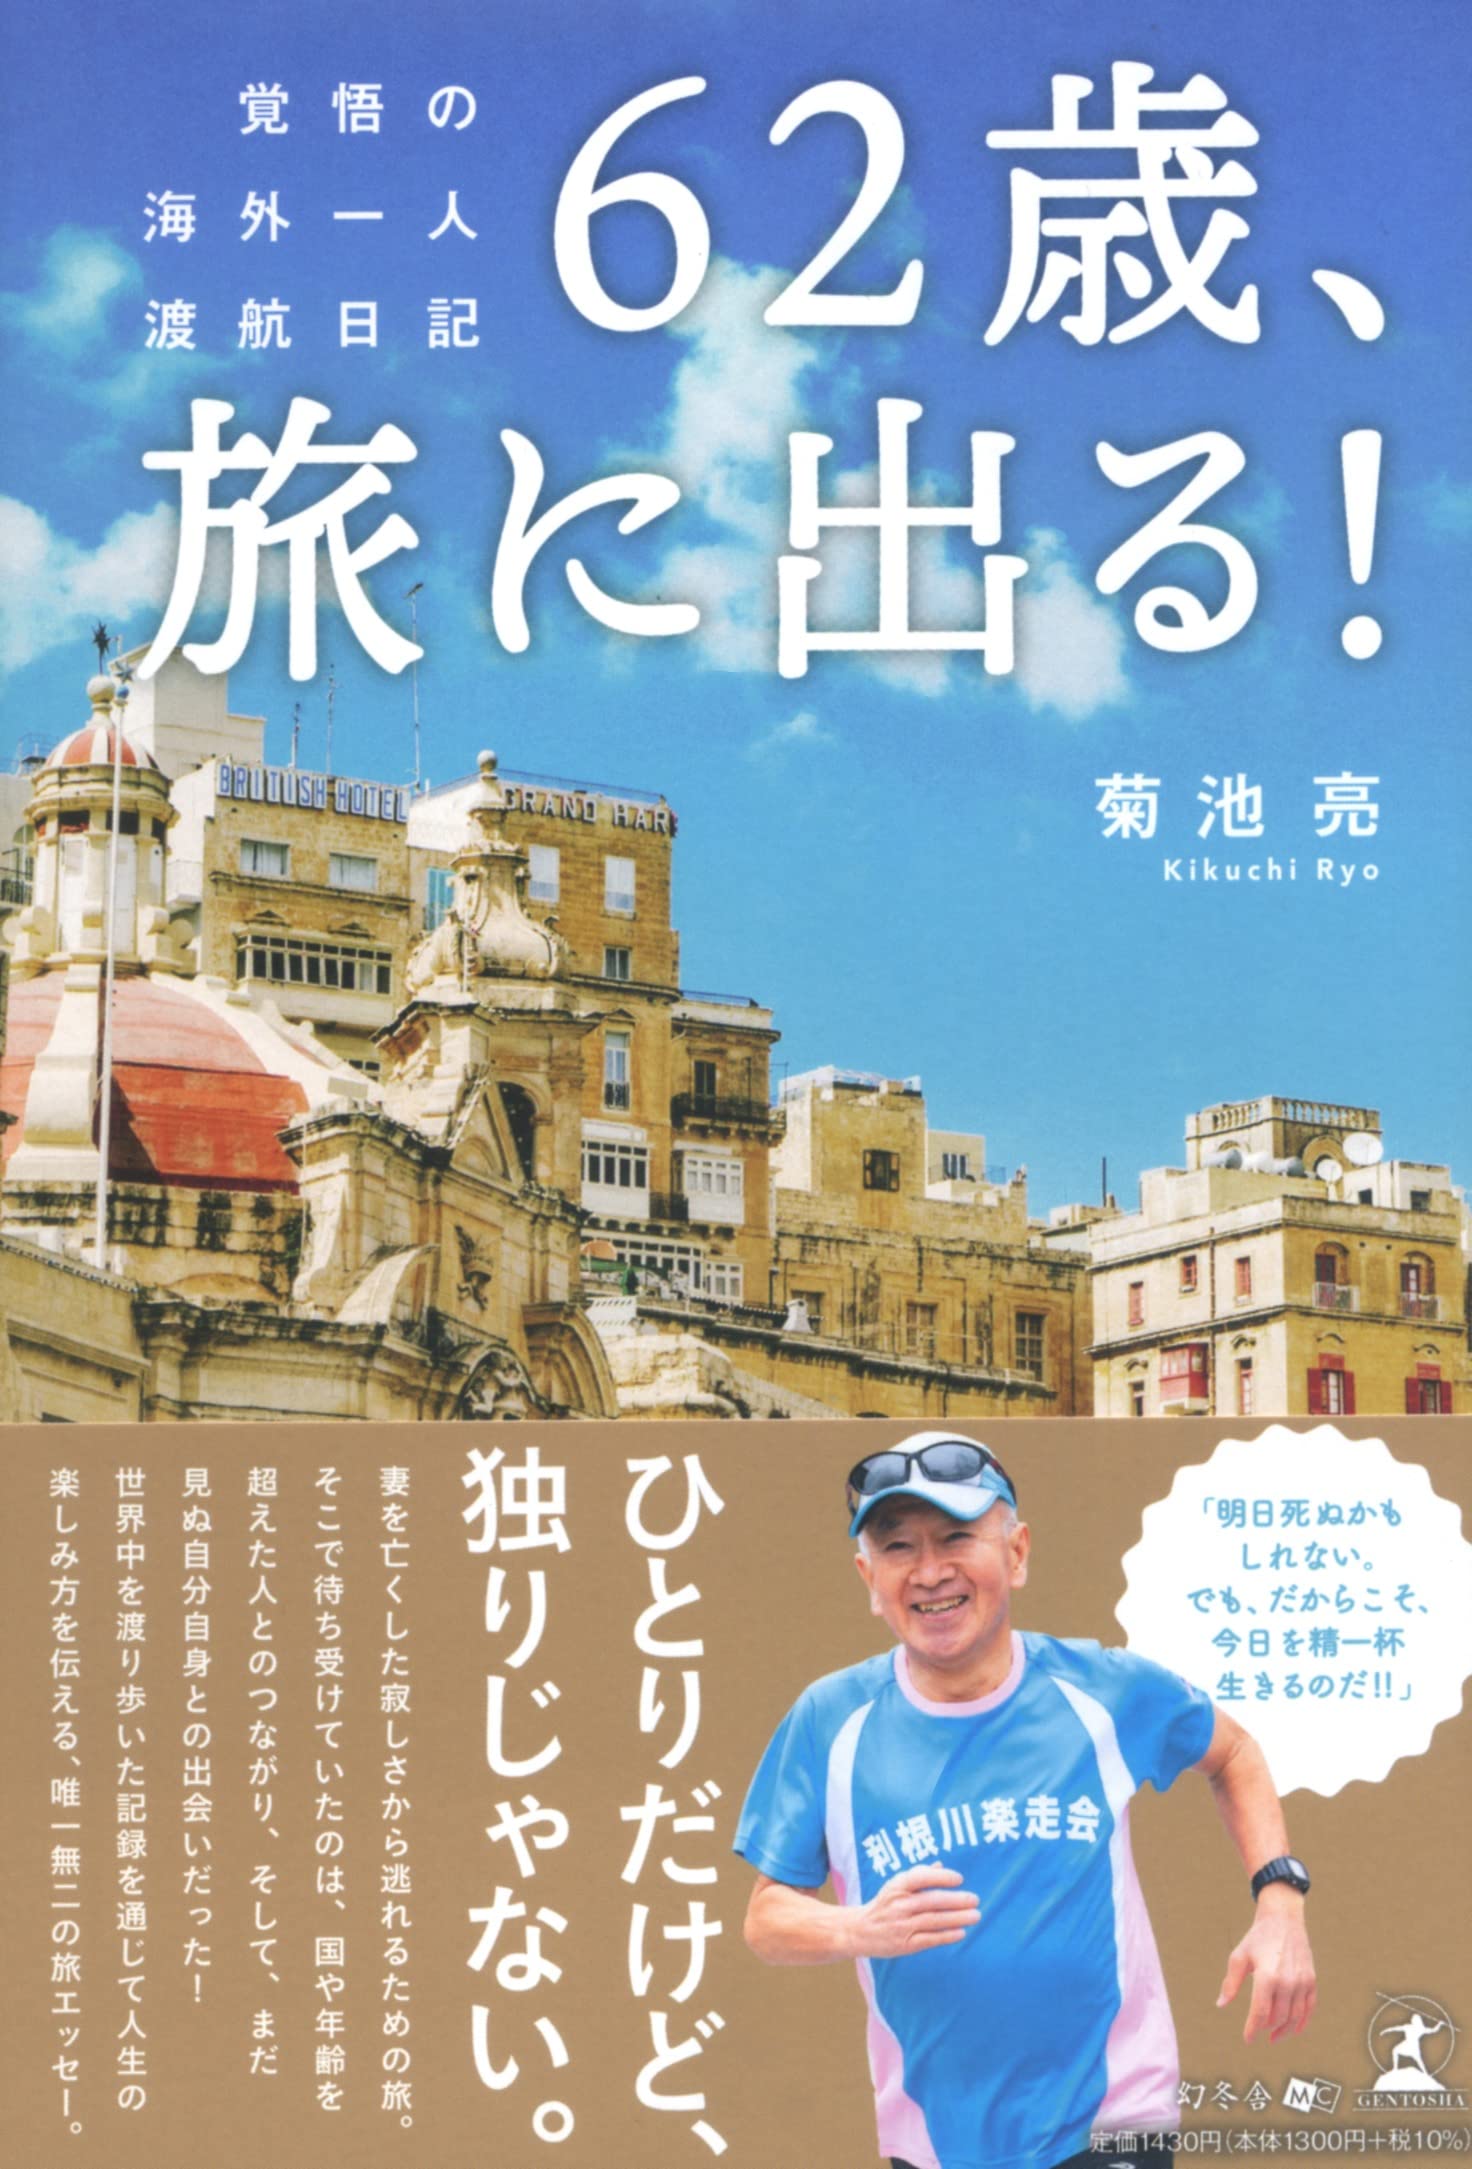 62歲、旅に出る! 覺悟の海外一人渡航日記